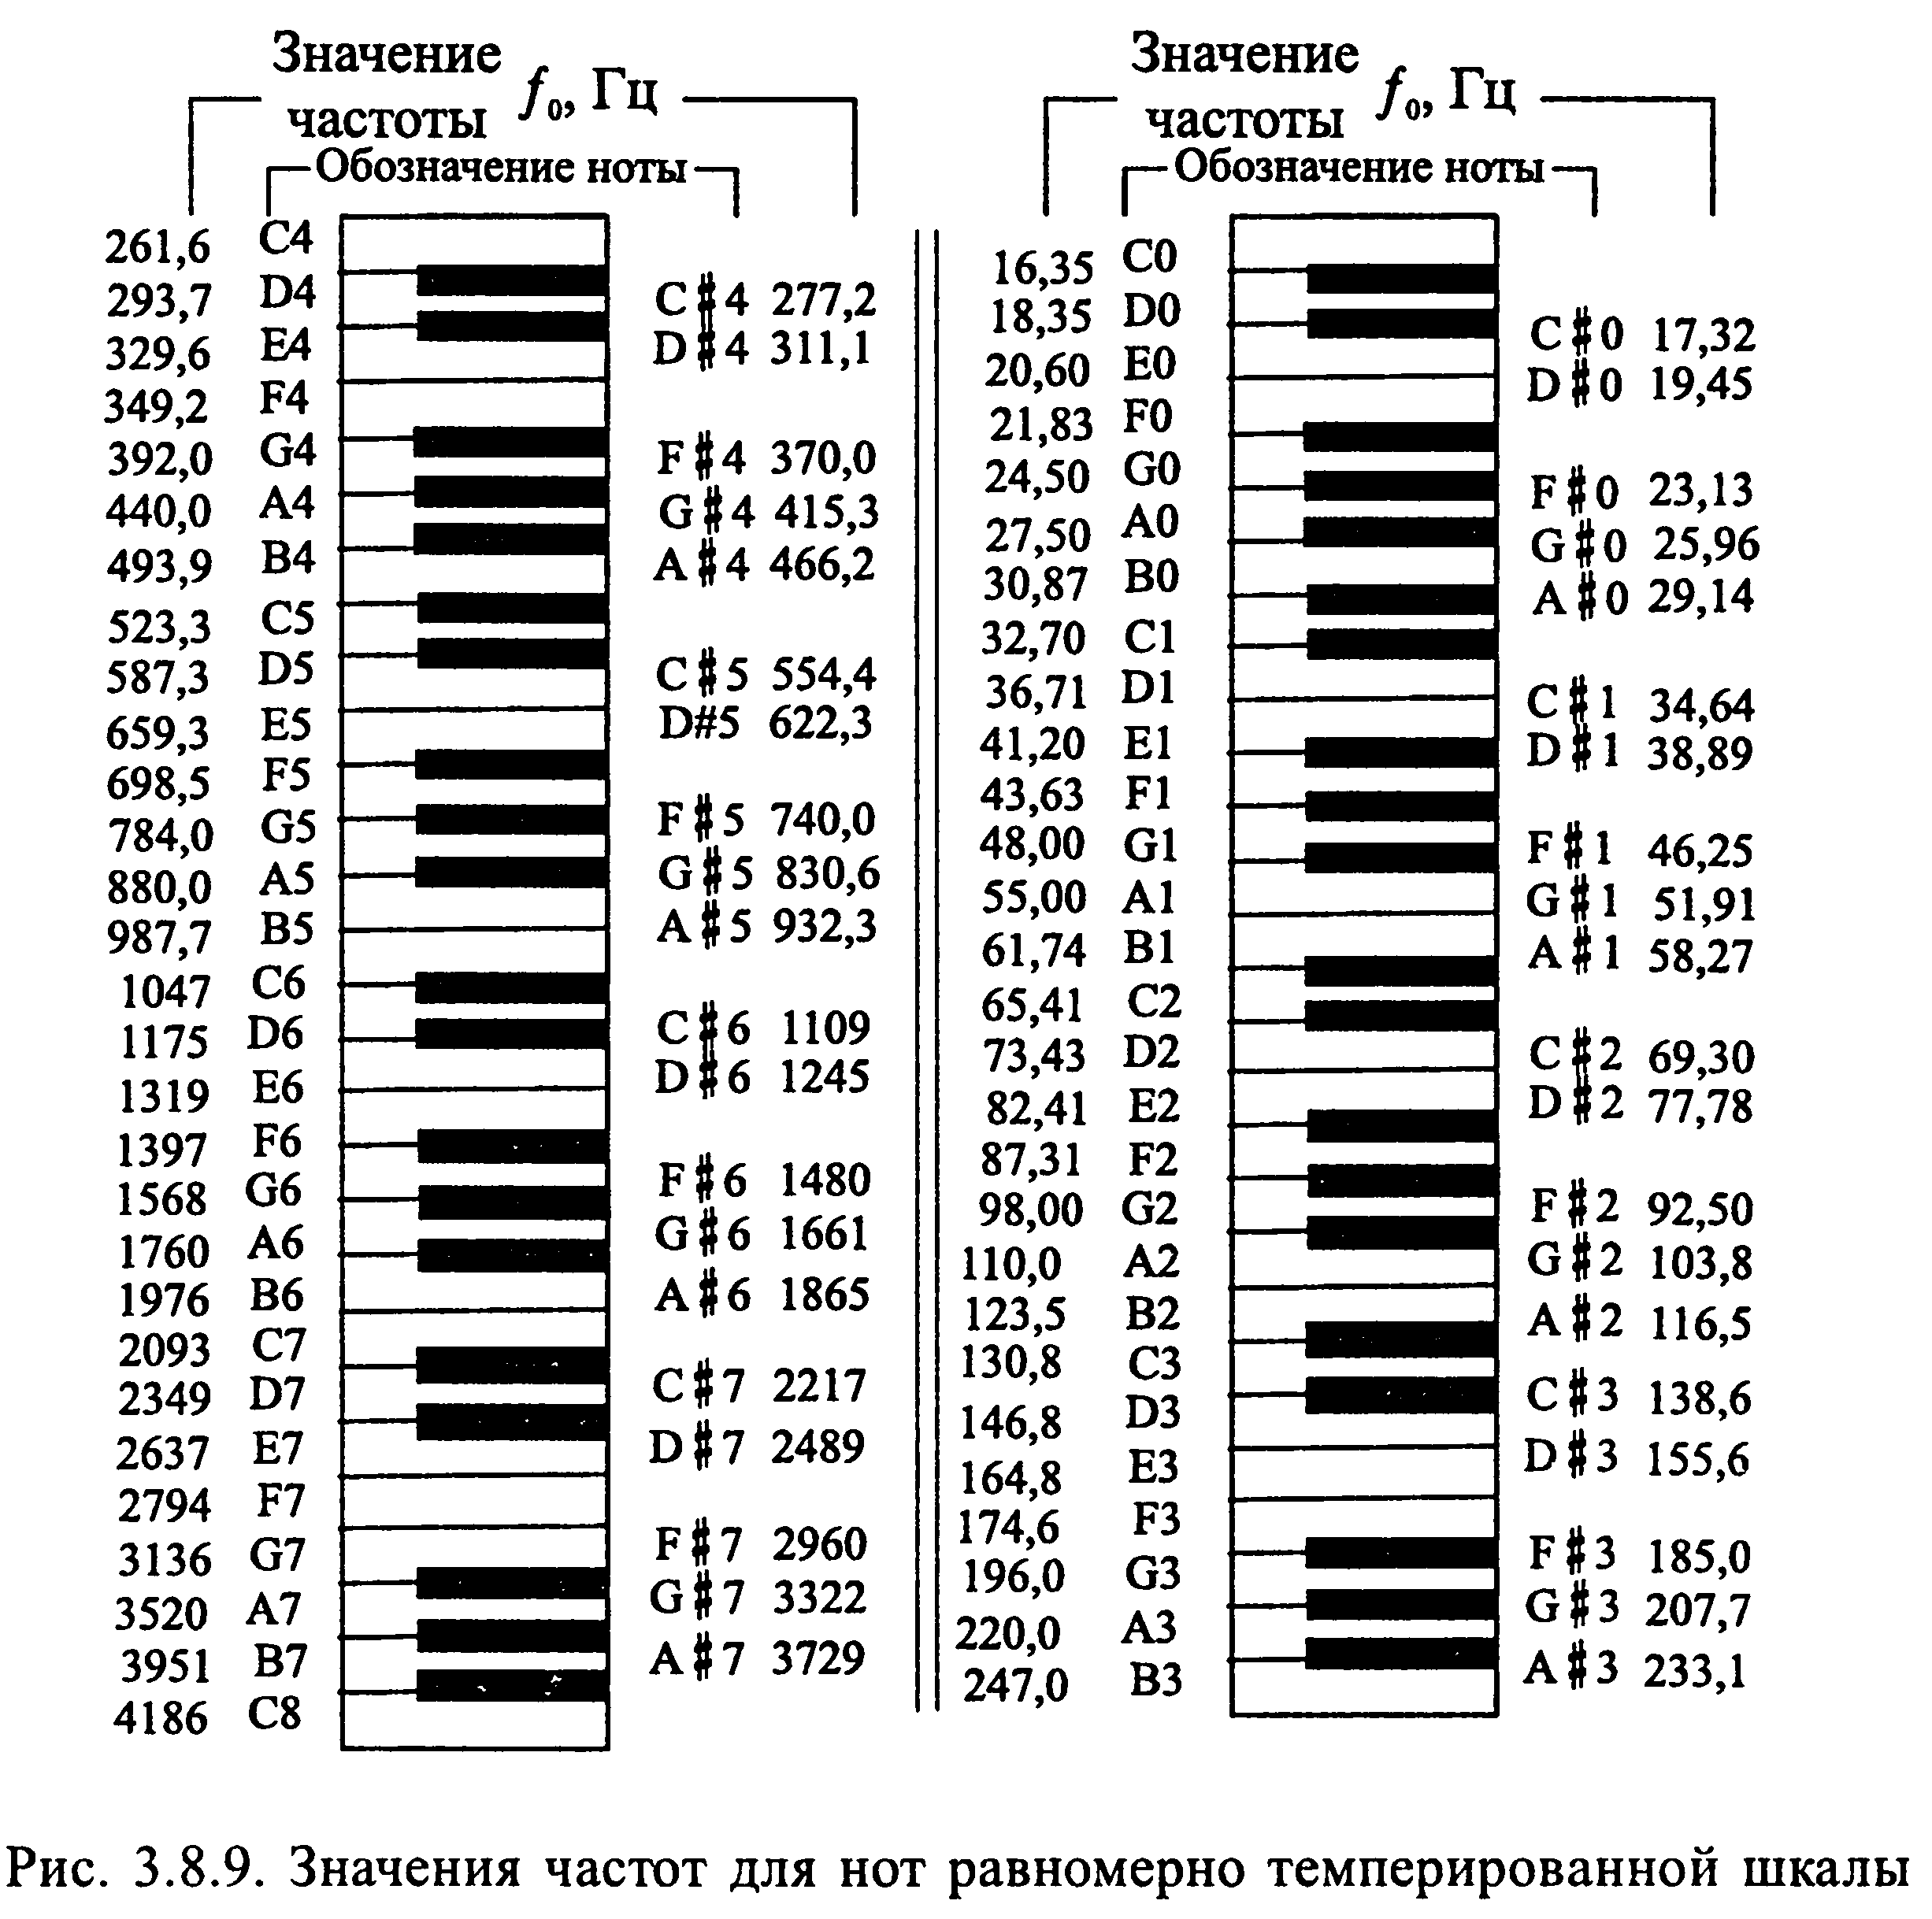 Третий звук музыкальной гаммы. Частоиынод фортепиано. Таблица частоты звуковых нот. Таблица частот нот фортепиано. Частоты нот в Герцах пианино.